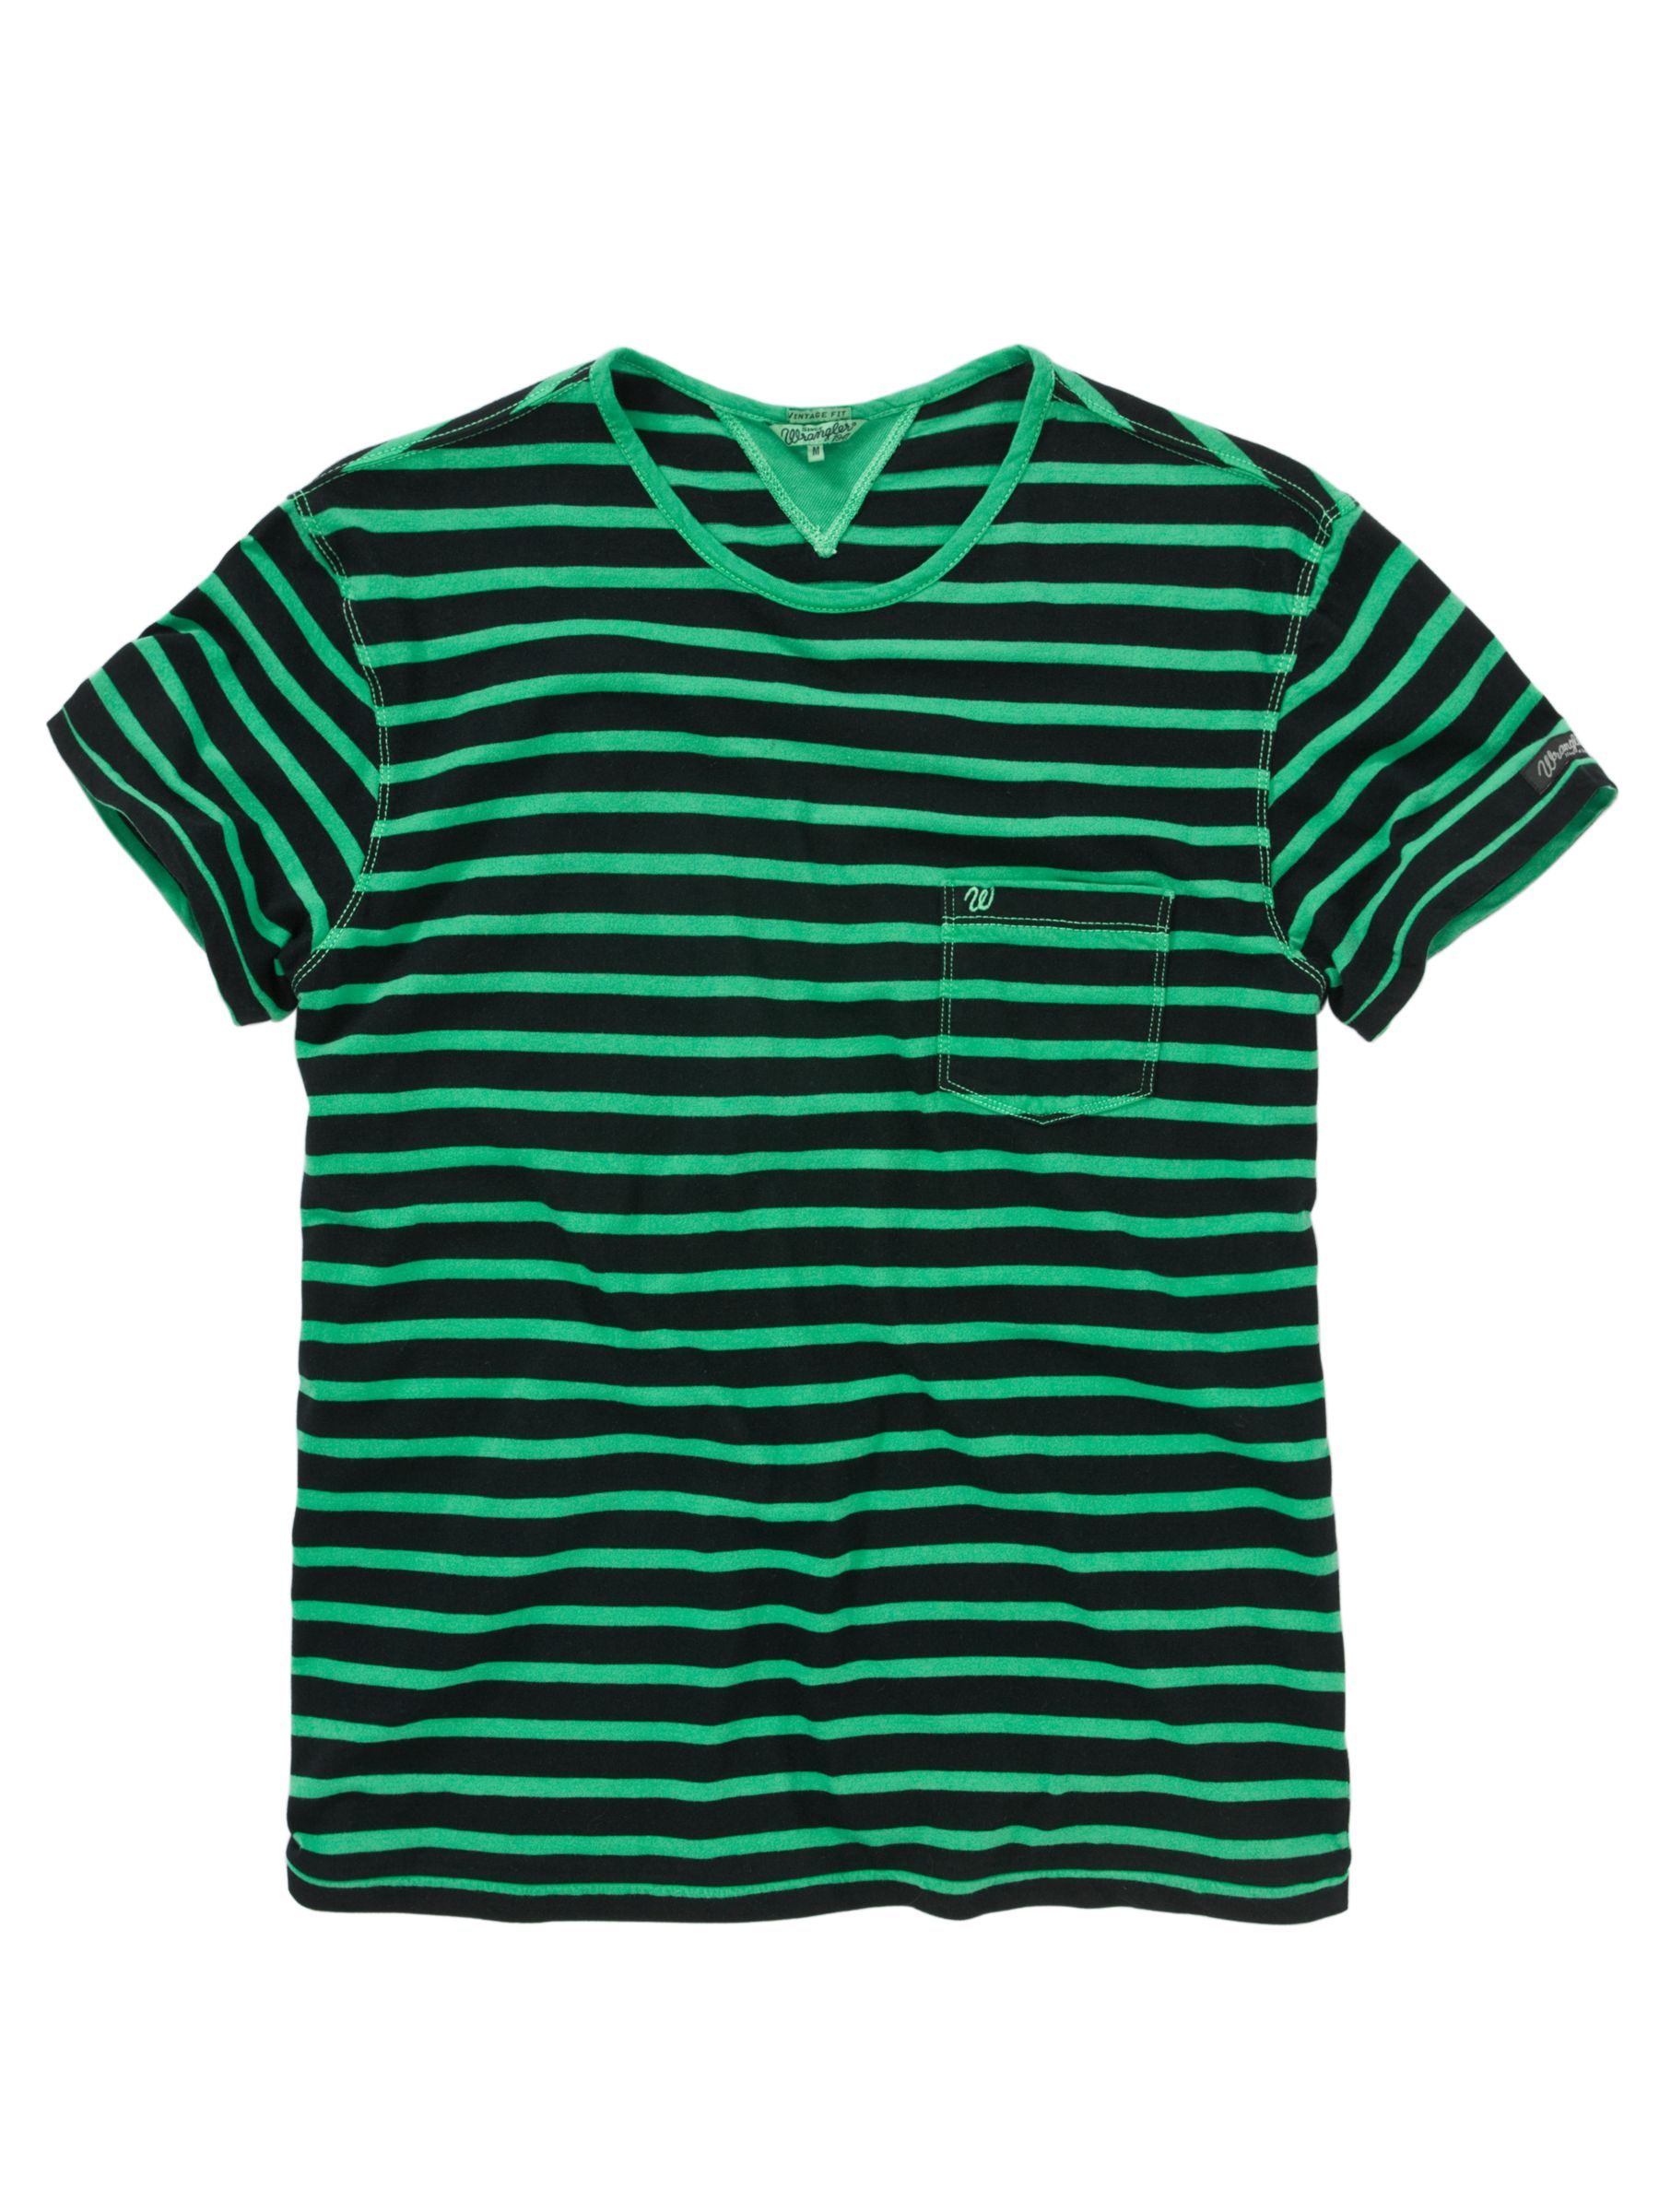 Wrangler Dean Stripe Short-Sleeve T-Shirt, Pine